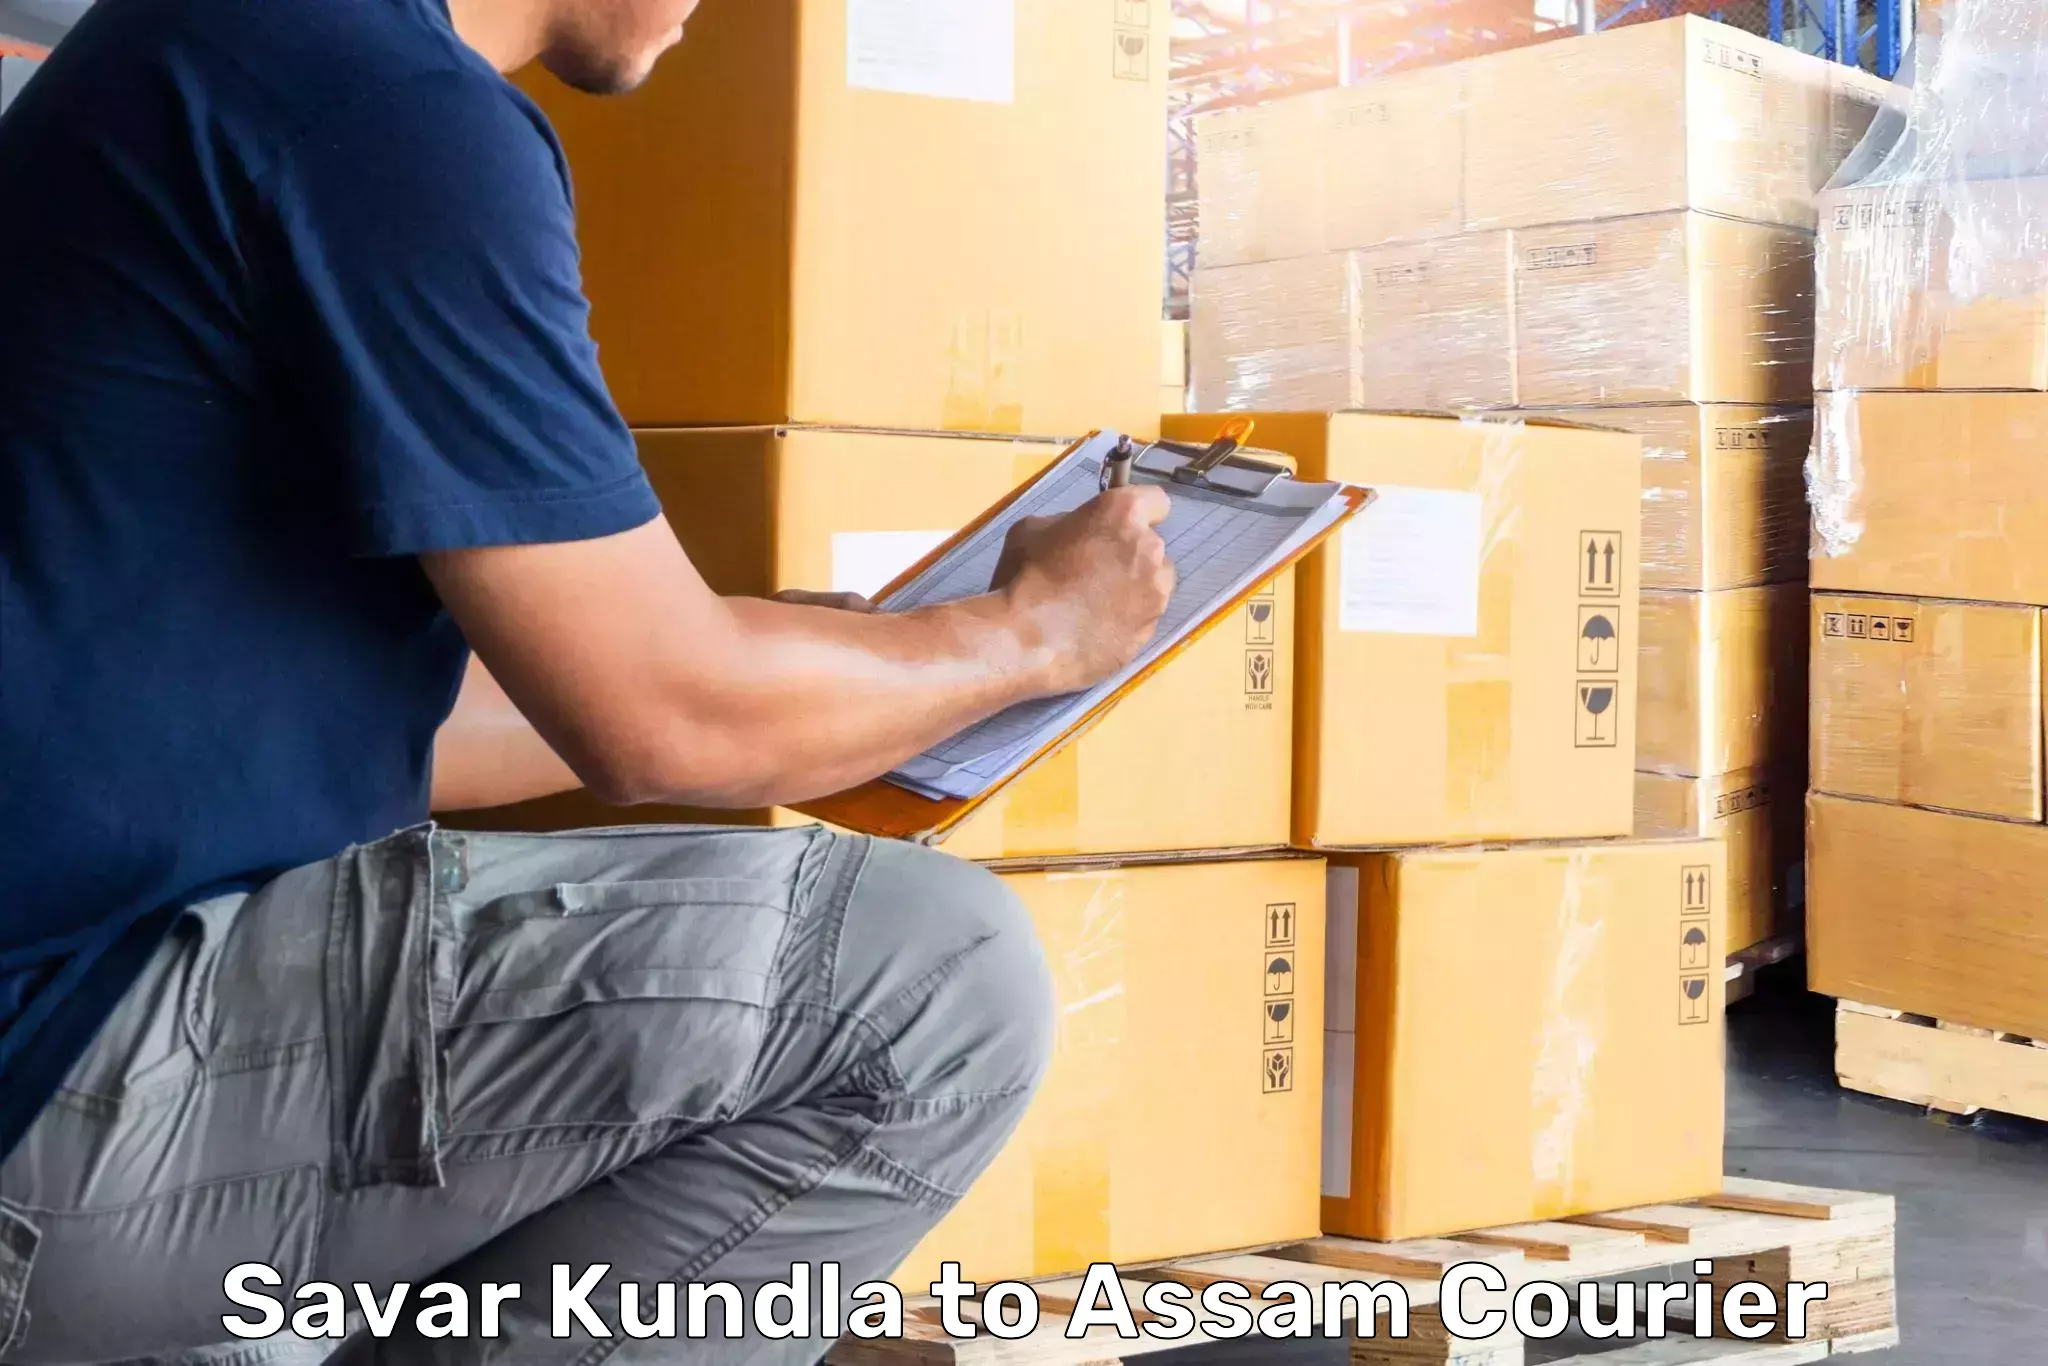 Luggage delivery operations Savar Kundla to Karimganj